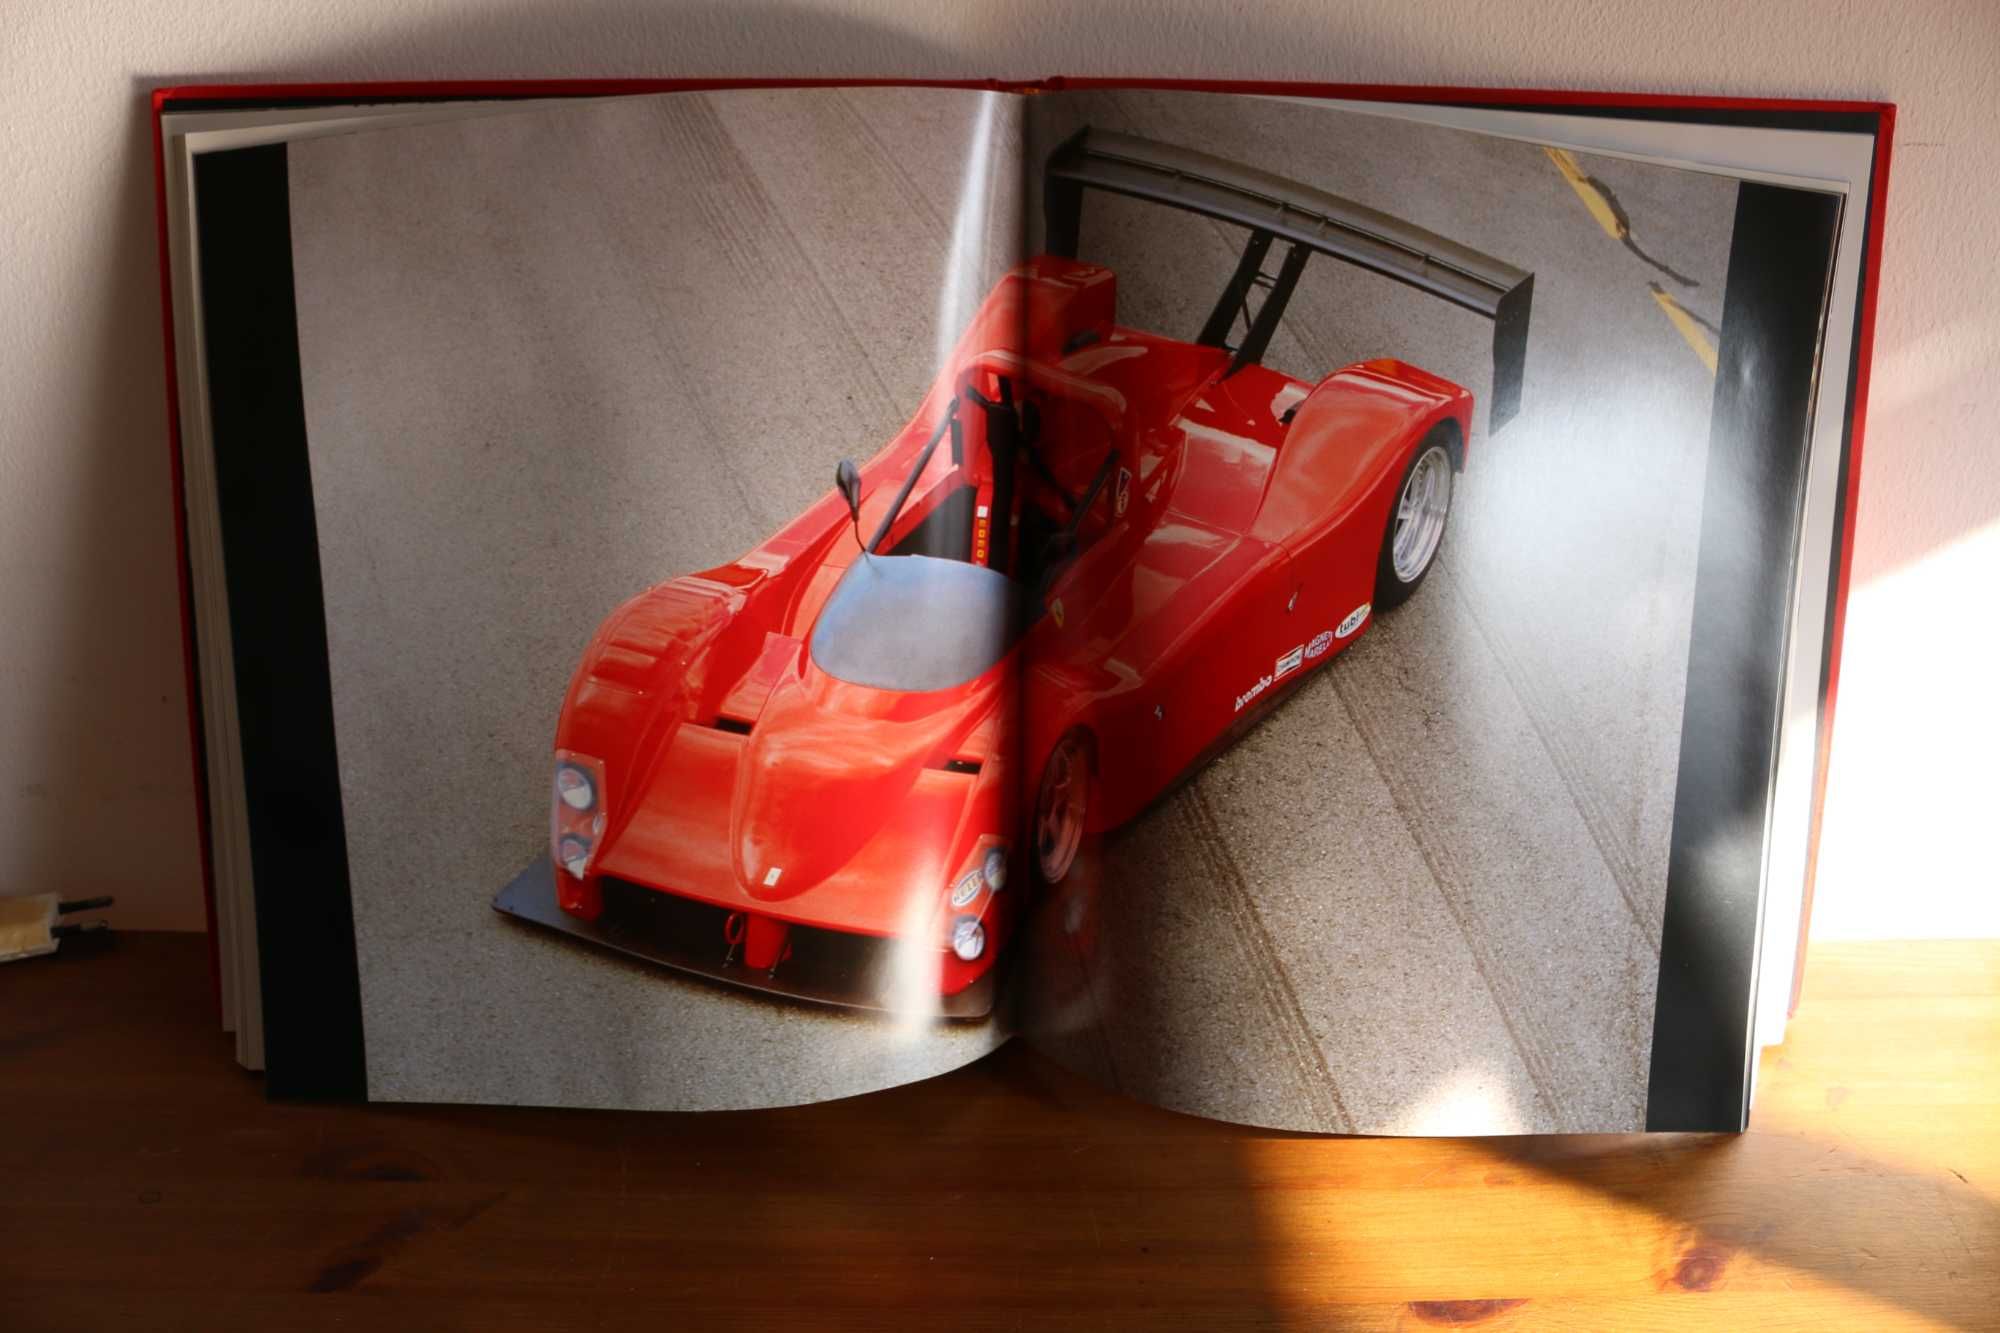 Livro Ferrari raro "Ferrari 333SP" Solaris